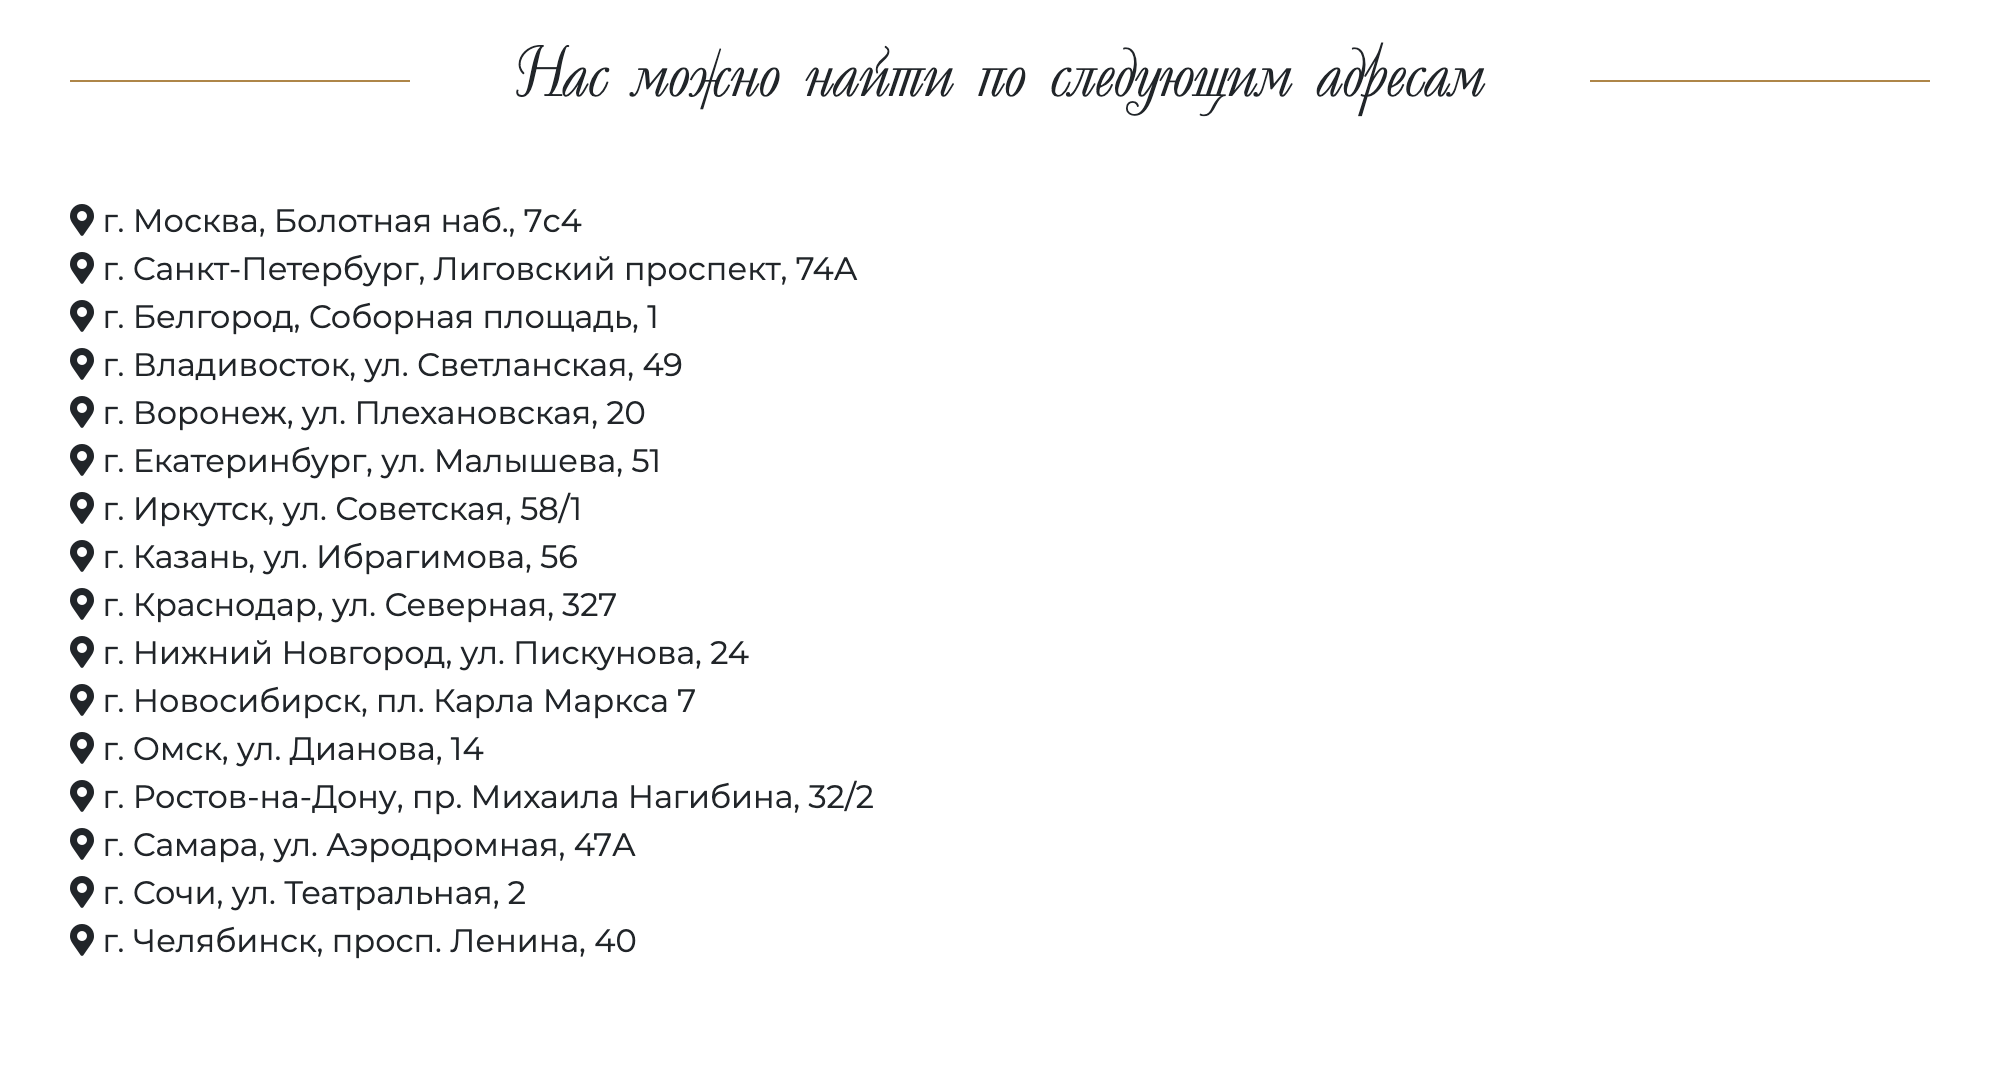 Пишут, что рестораны работают по всей России. Указаны точные адреса — это вызывает доверие и помогает собрать заявки из регионов